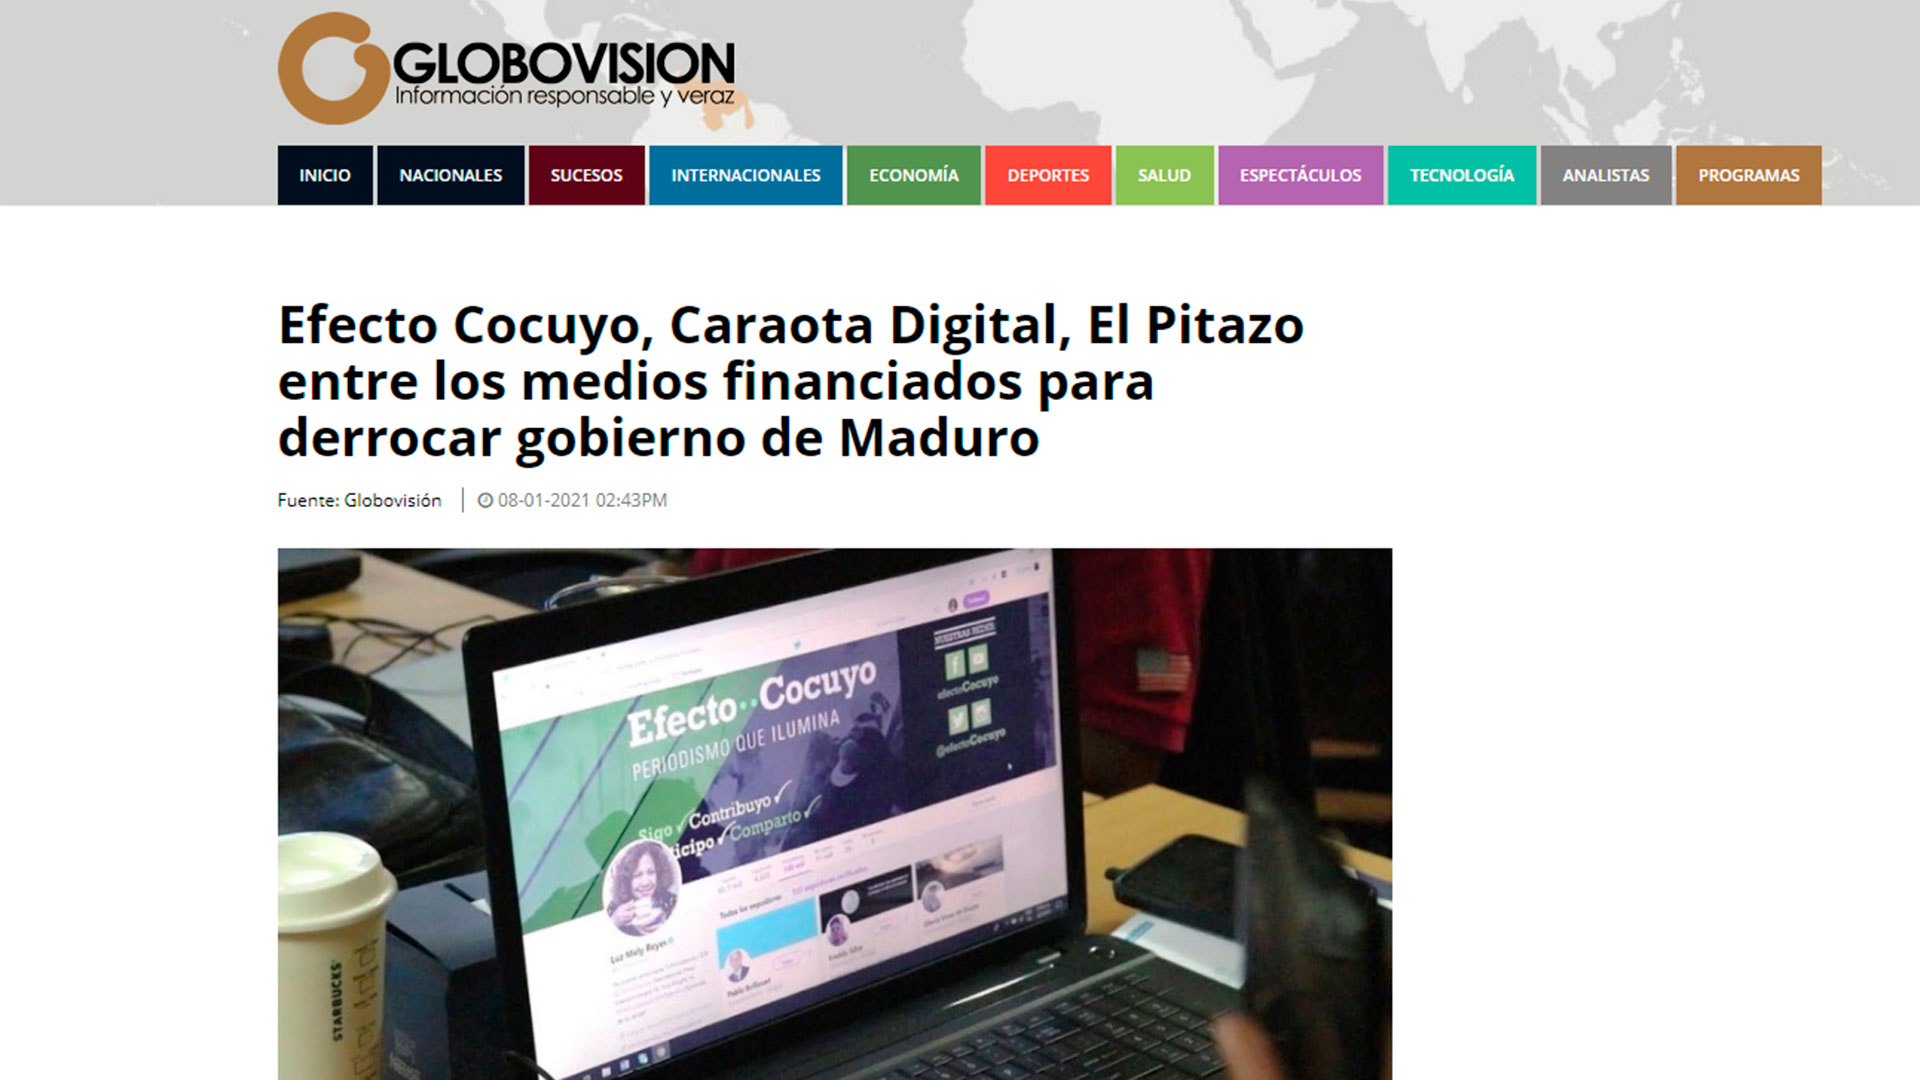 El artículo de la cadena chavista Globovisión